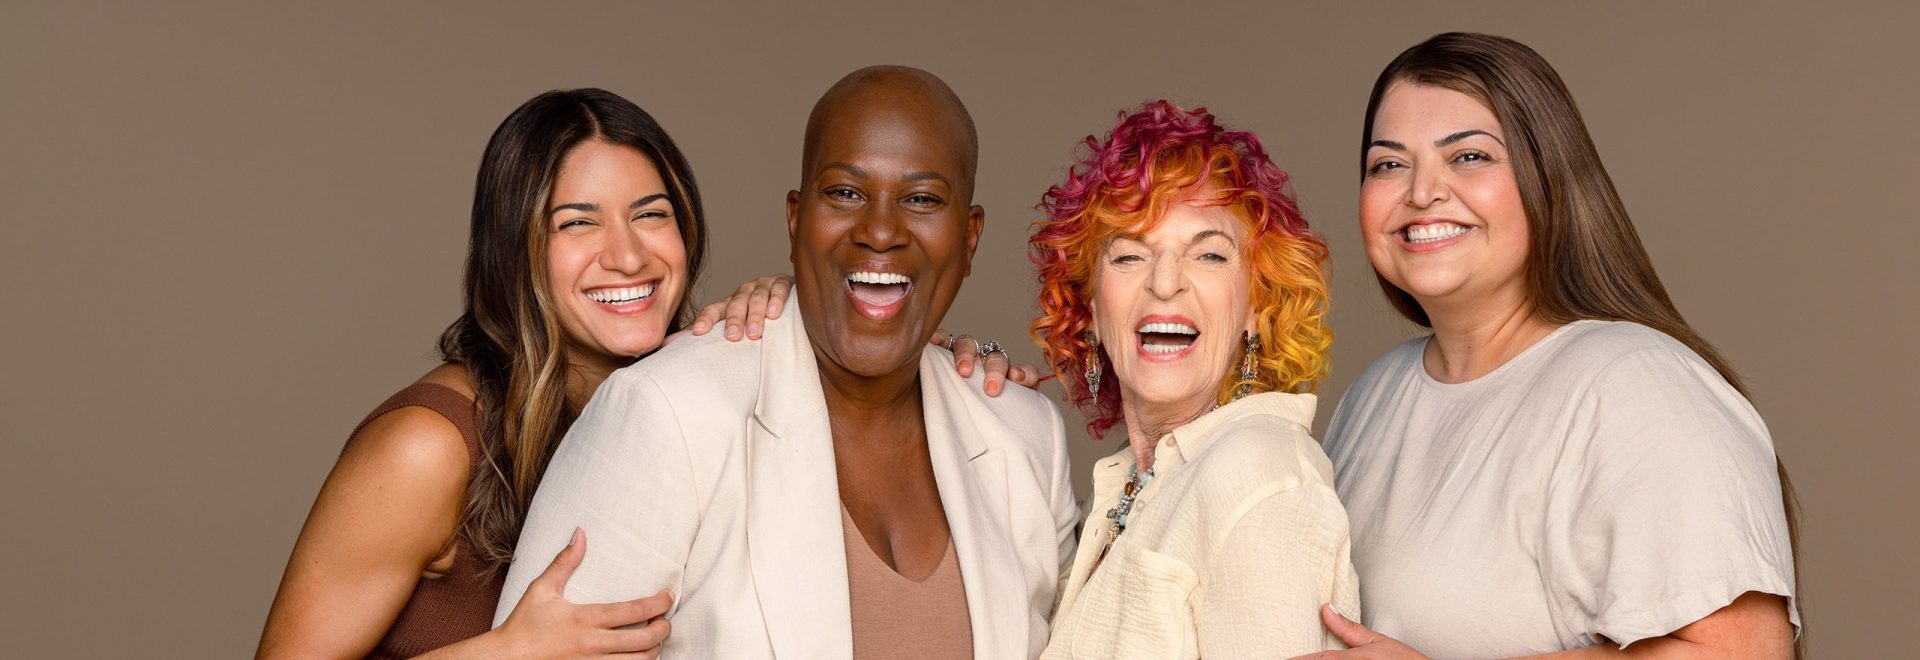 Cuatro mujeres de buen humor, riendo y sonriendo